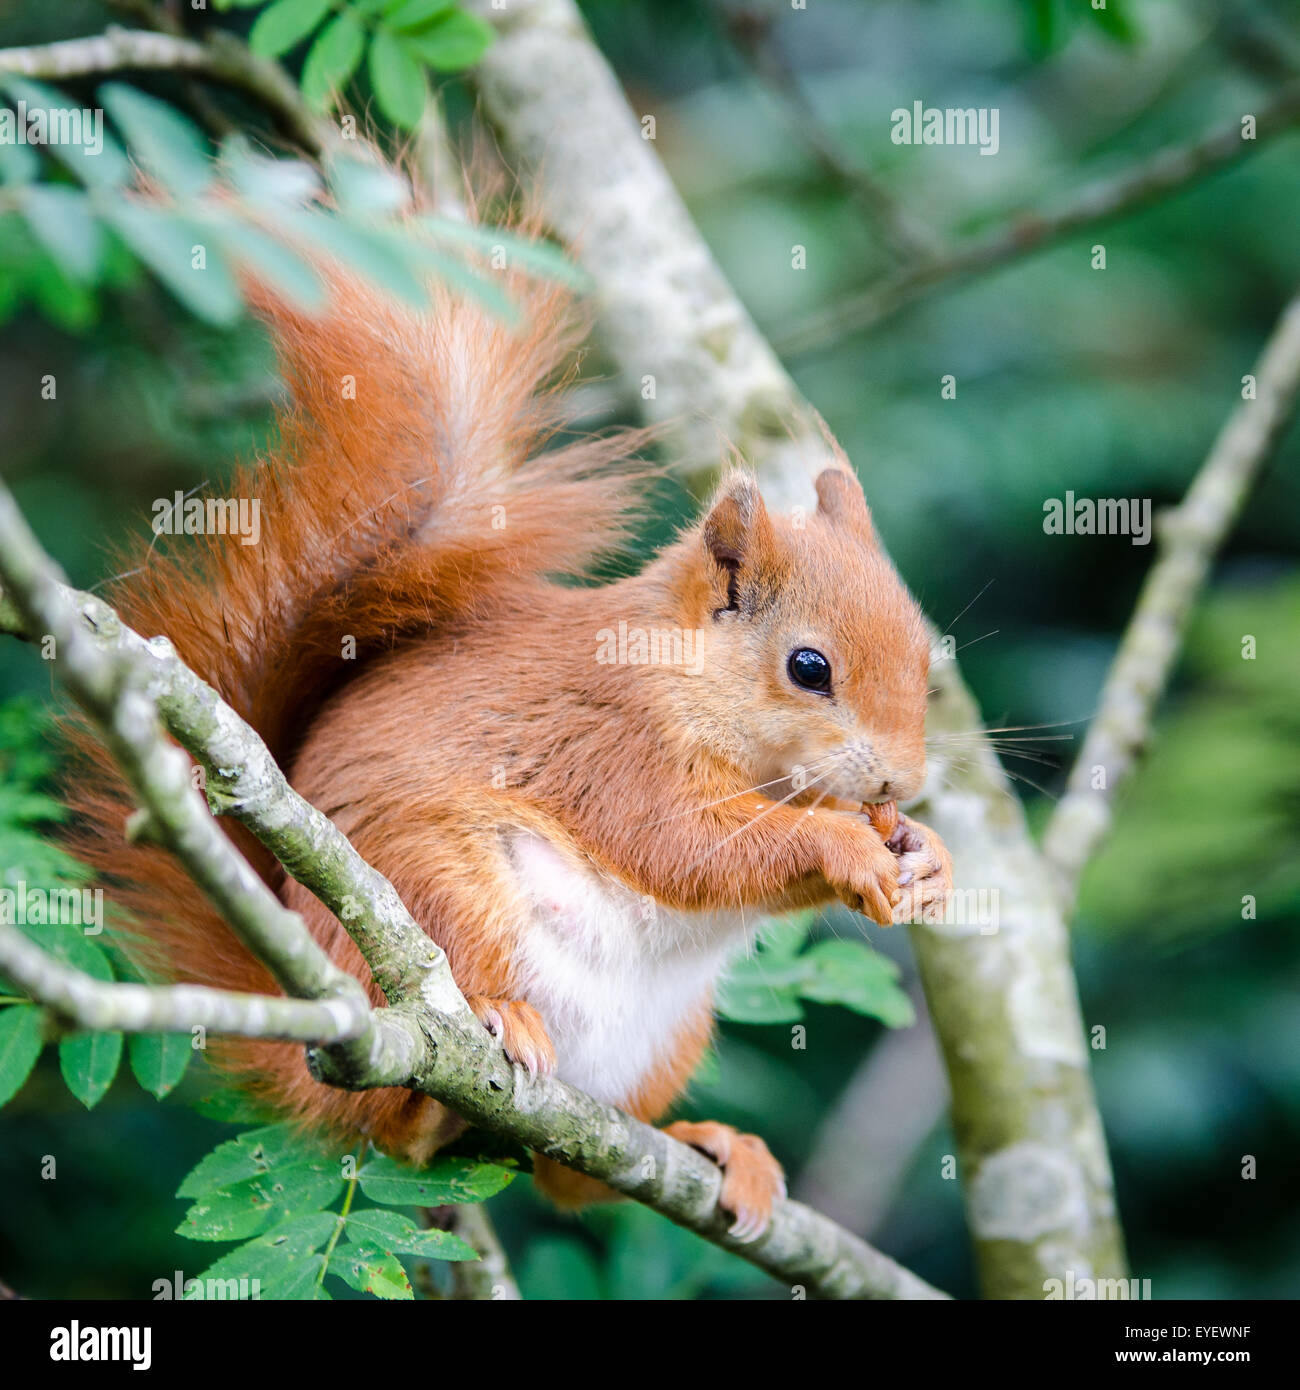 Red squirrel (Sciurus vulgaris) sitting in tree eating nut Stock Photo